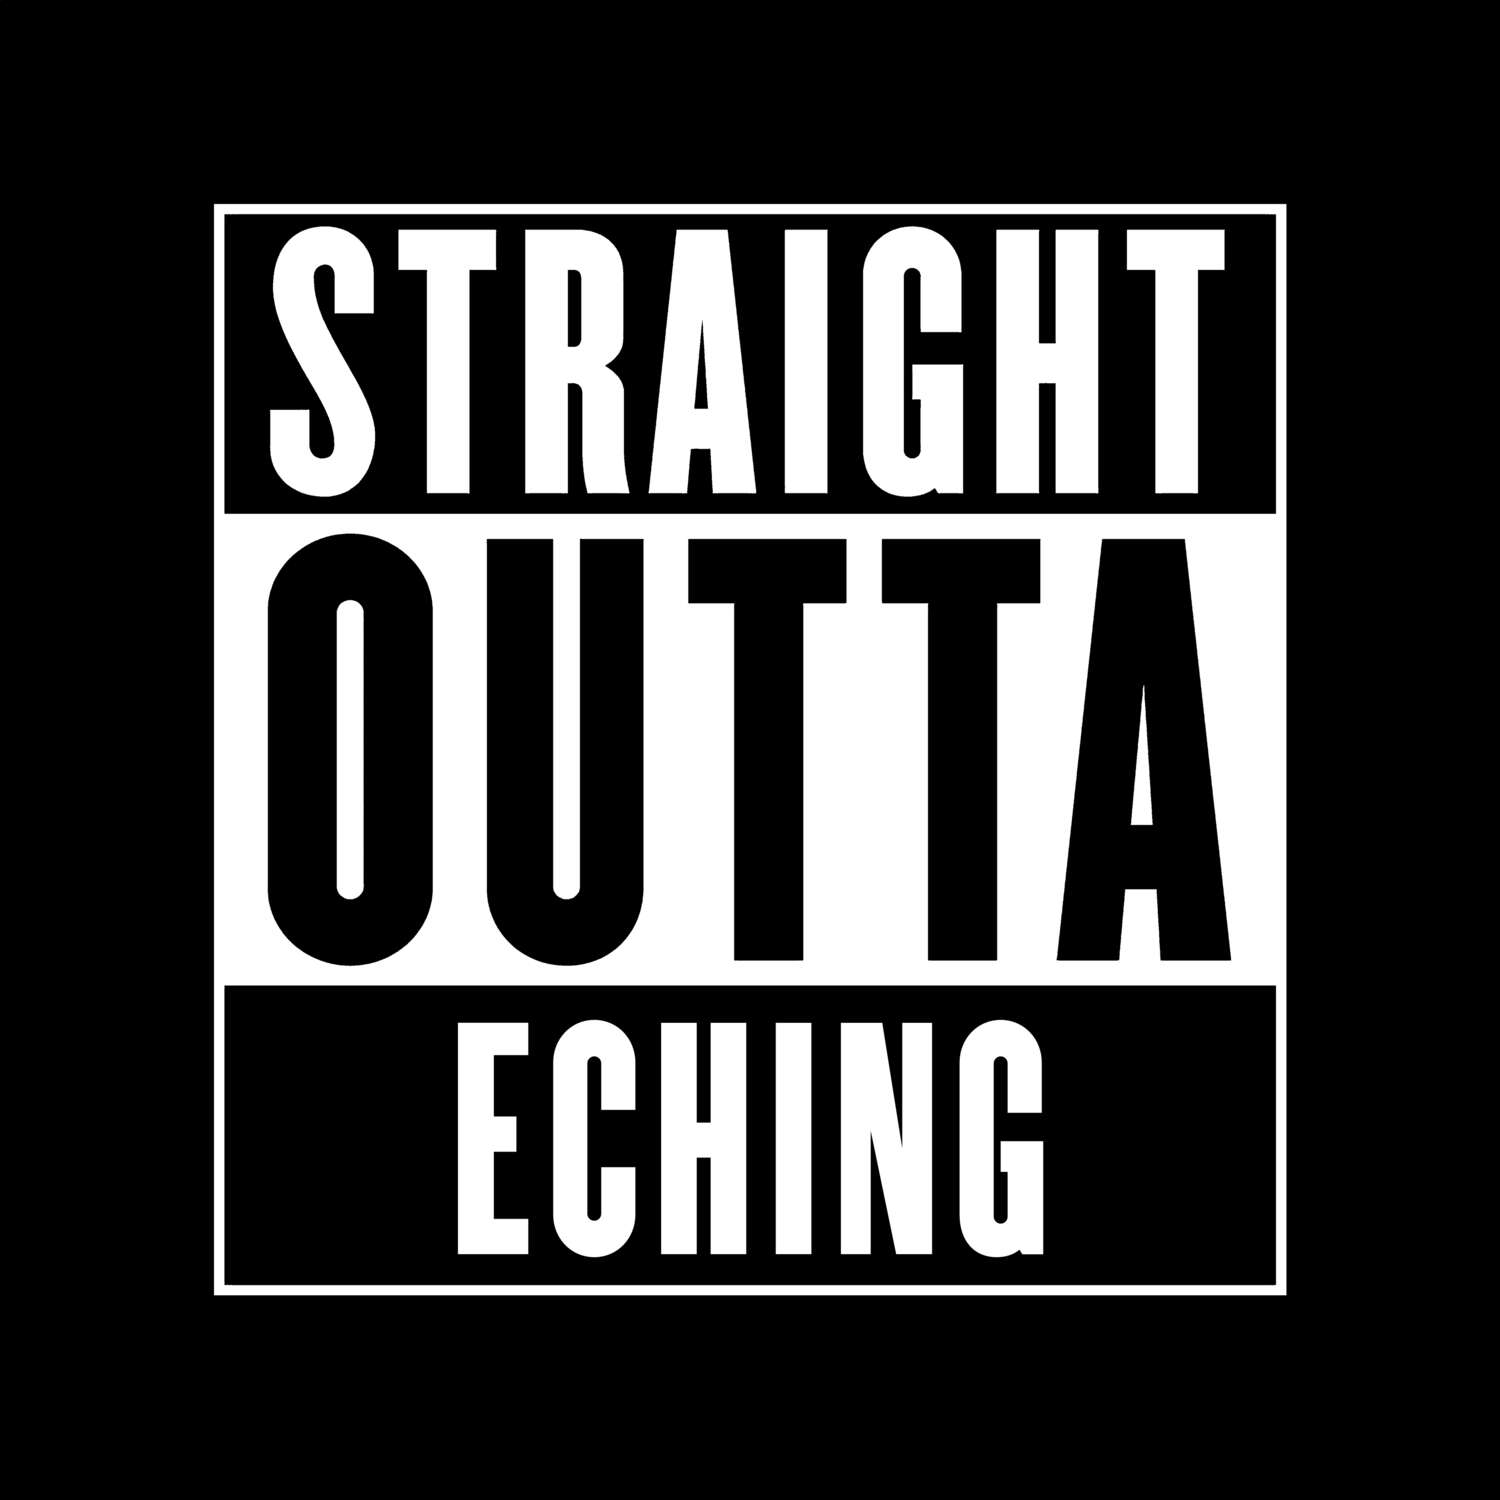 Eching T-Shirt »Straight Outta«